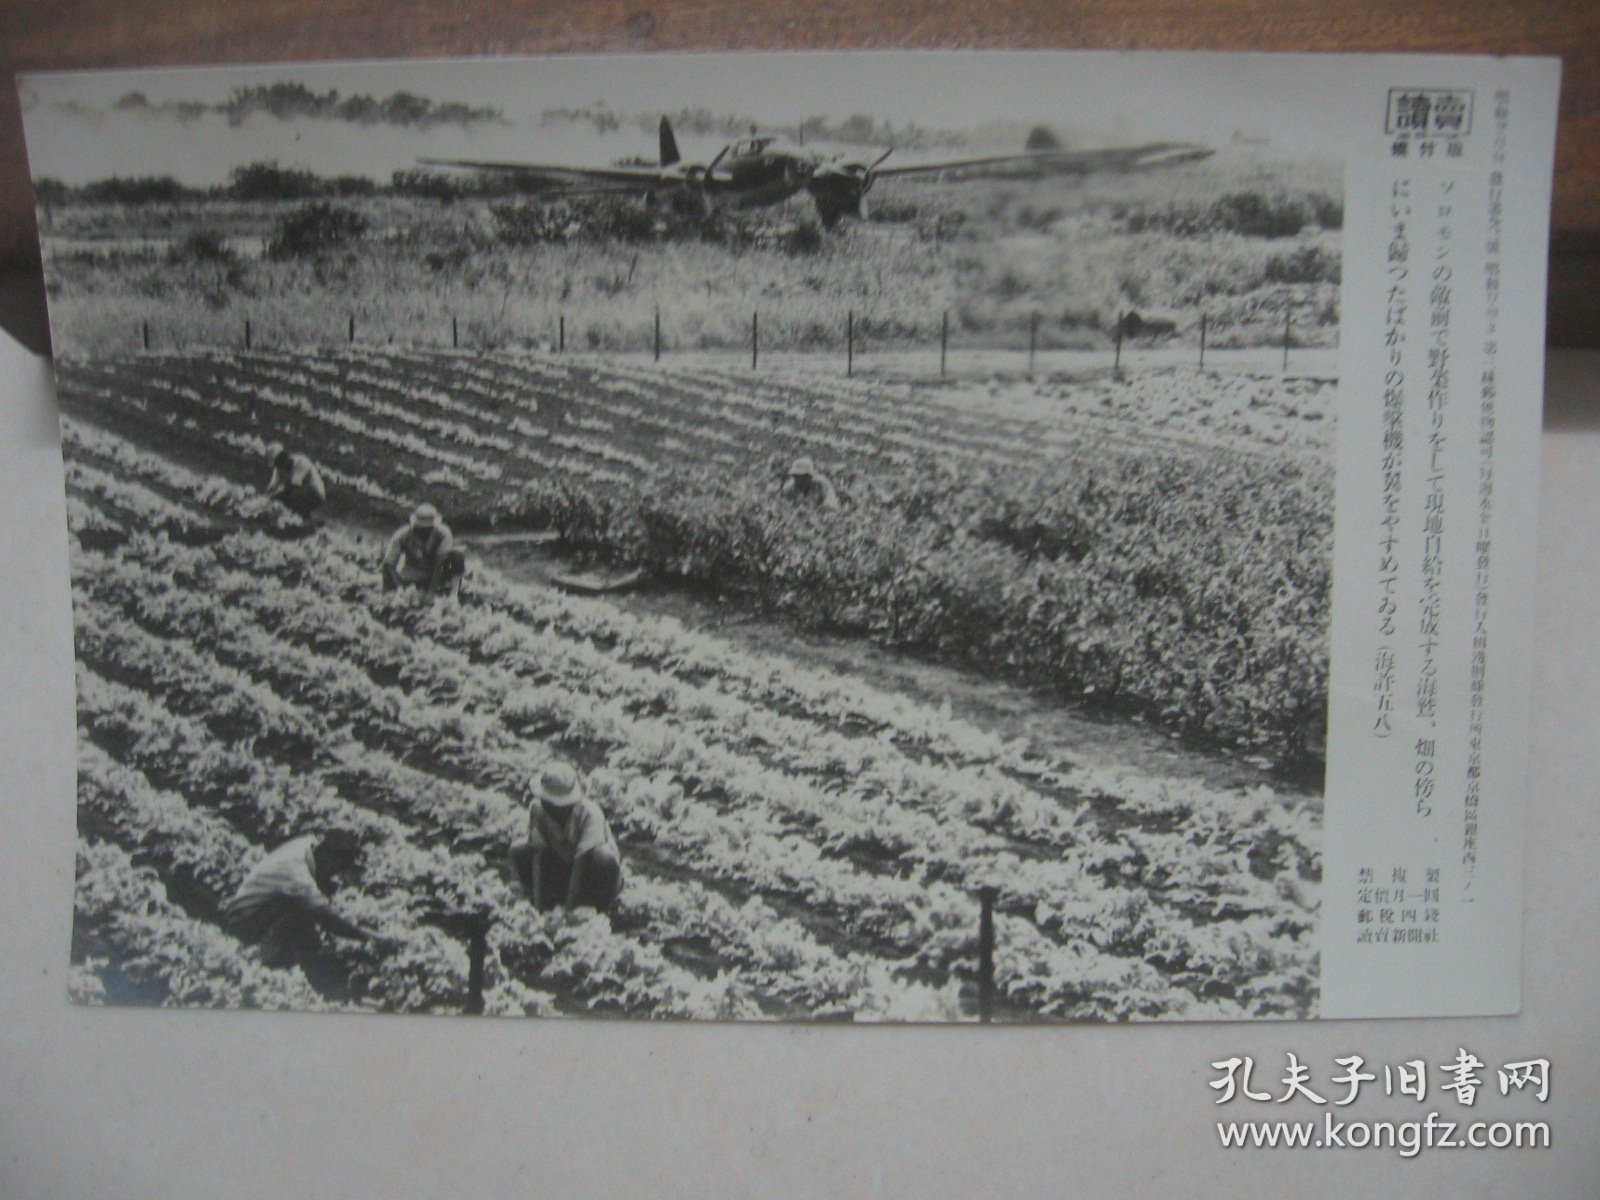 读卖新闻老照片 1943年 《归航的日军轰炸机掠过所罗门正在作业的菜场》1枚  烧付版